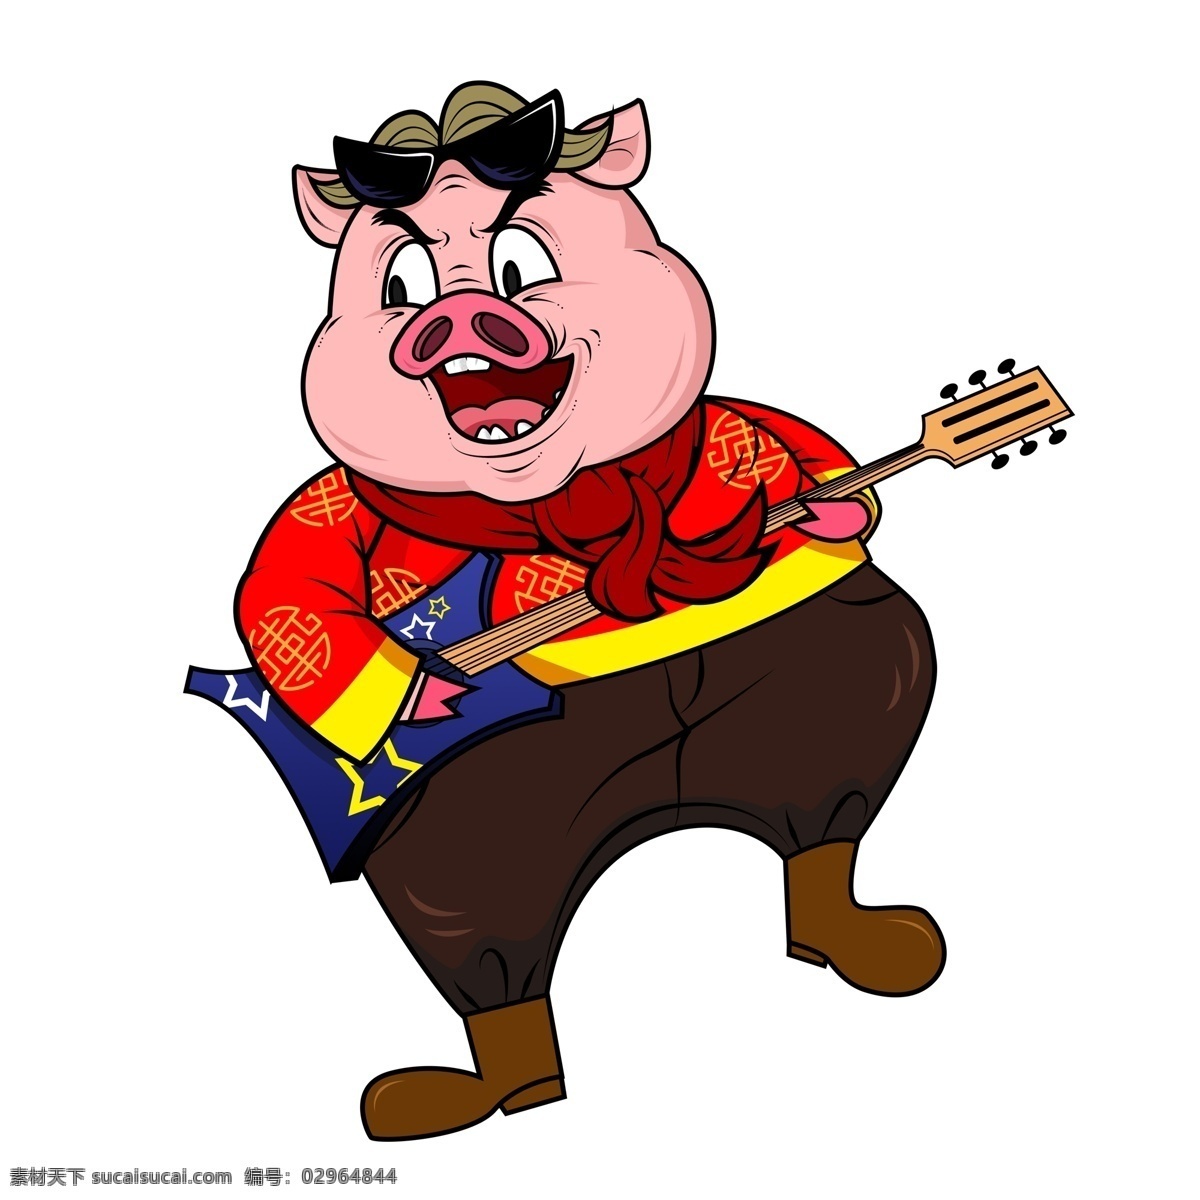 漫 画风 猪年 弹 电吉他 潮 猪 卡通小猪 弹吉他 插画 喜庆 春节 潮漫 手绘 潮猪 小猪形象 猪年形象